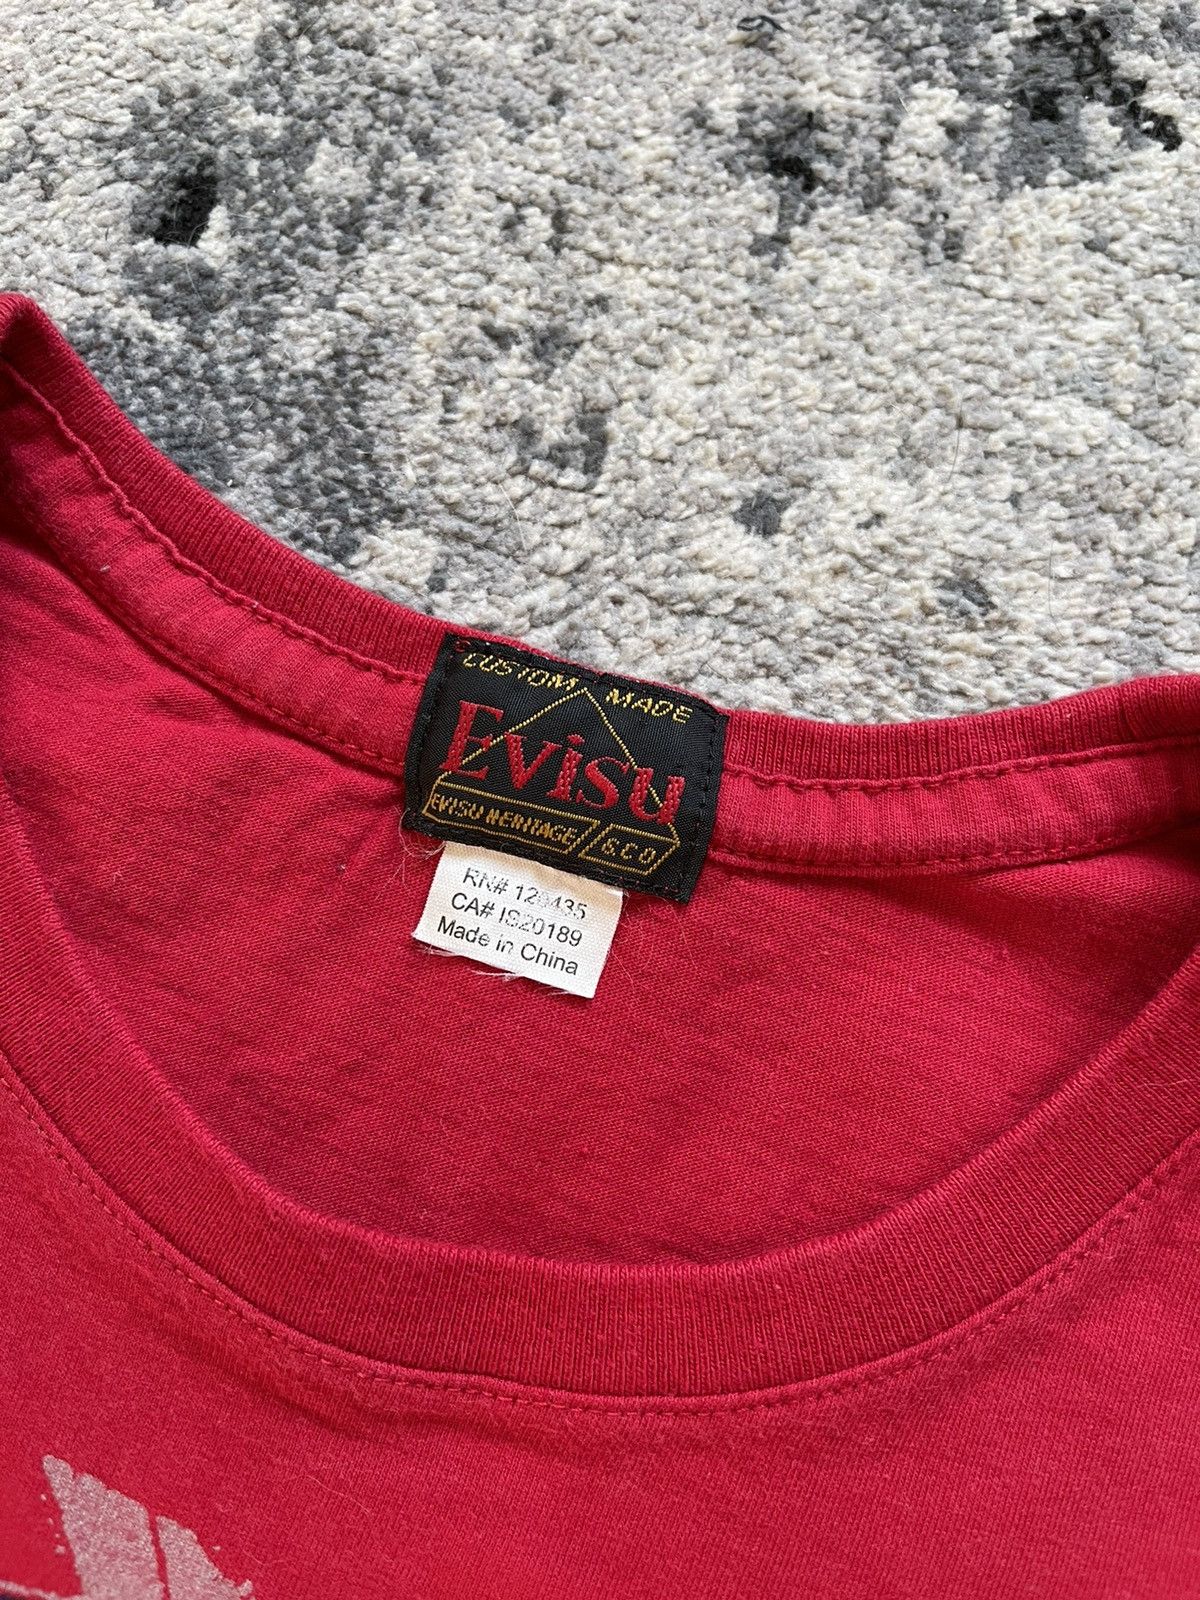 Evisu Evisu T-Shirt red S Size US S / EU 44-46 / 1 - 2 Preview